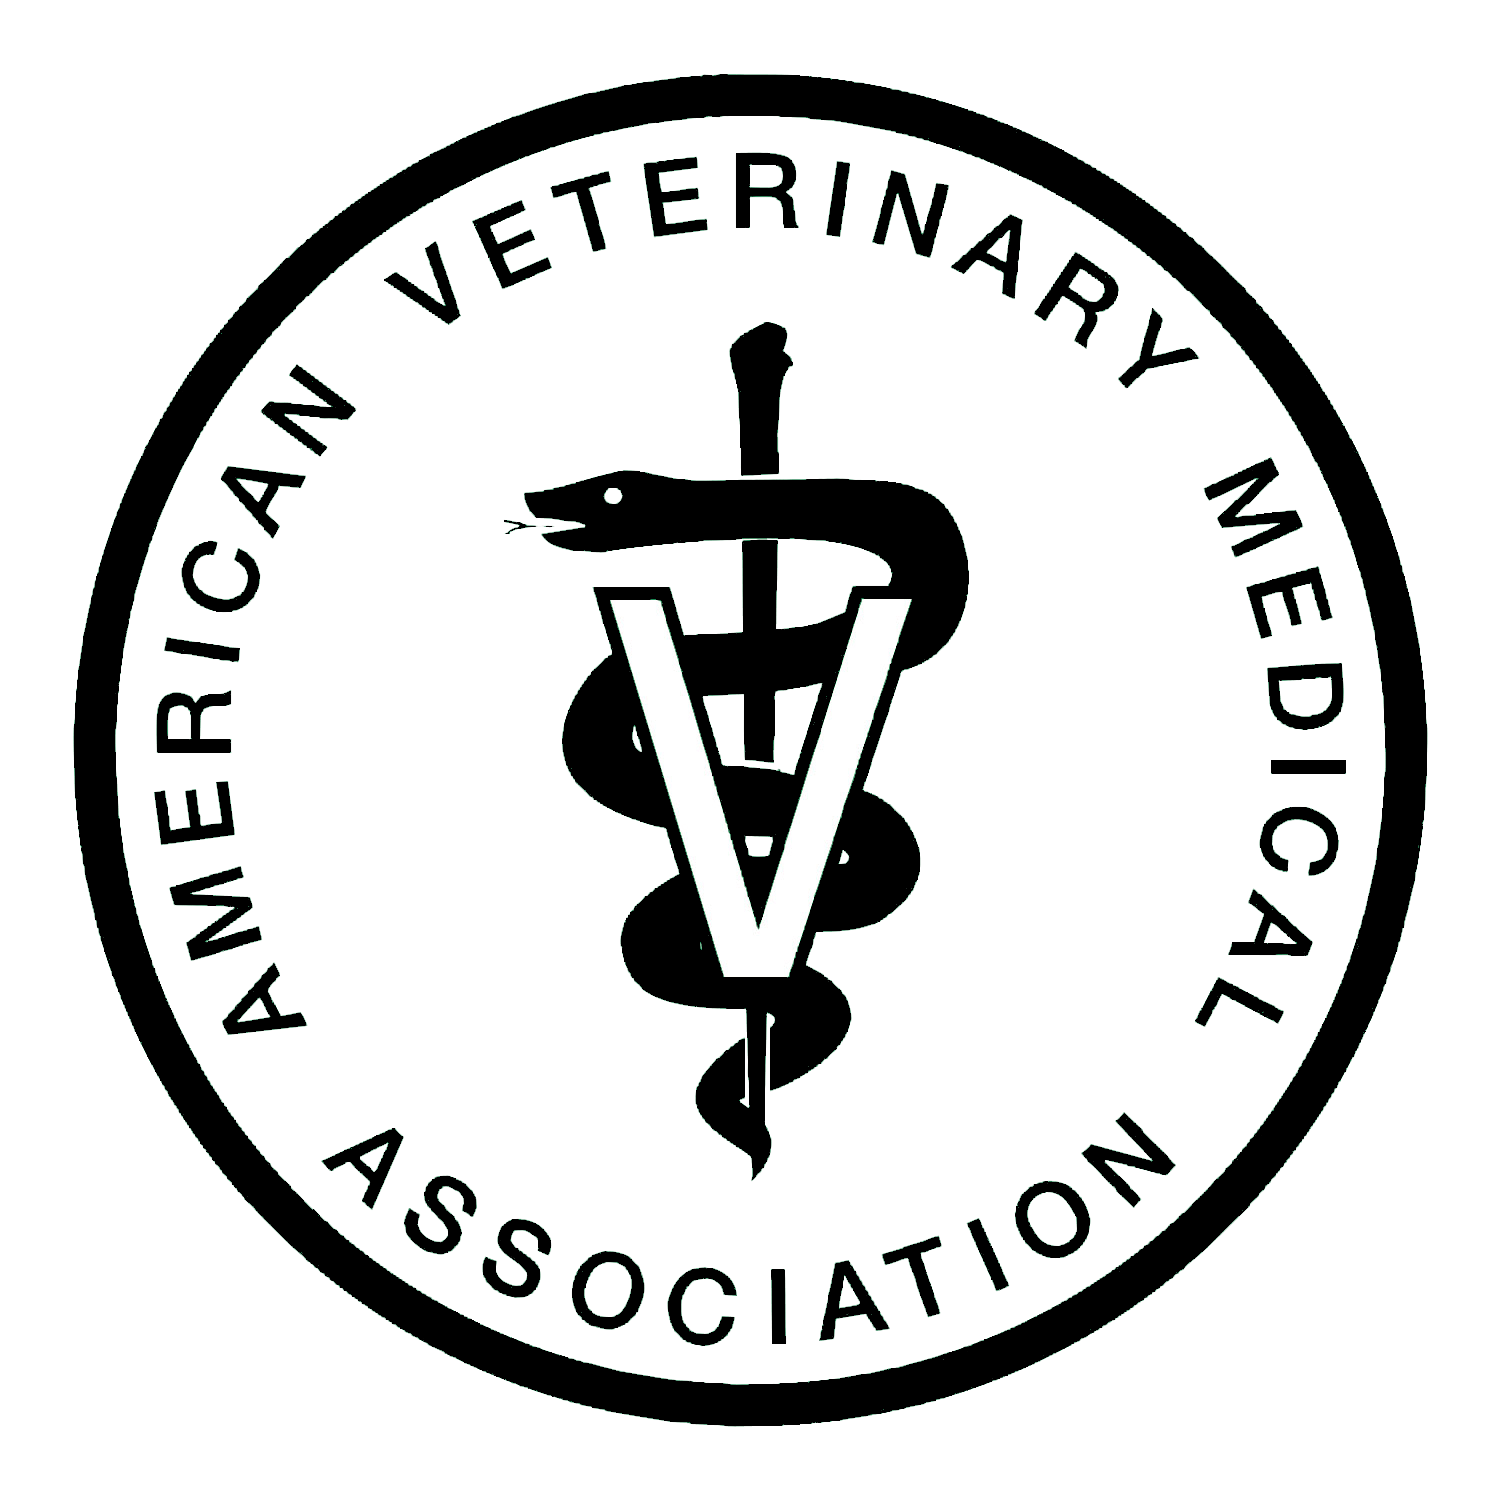 American Veterinary Medical Association Logo - Fort Veterinary Hospital, INC